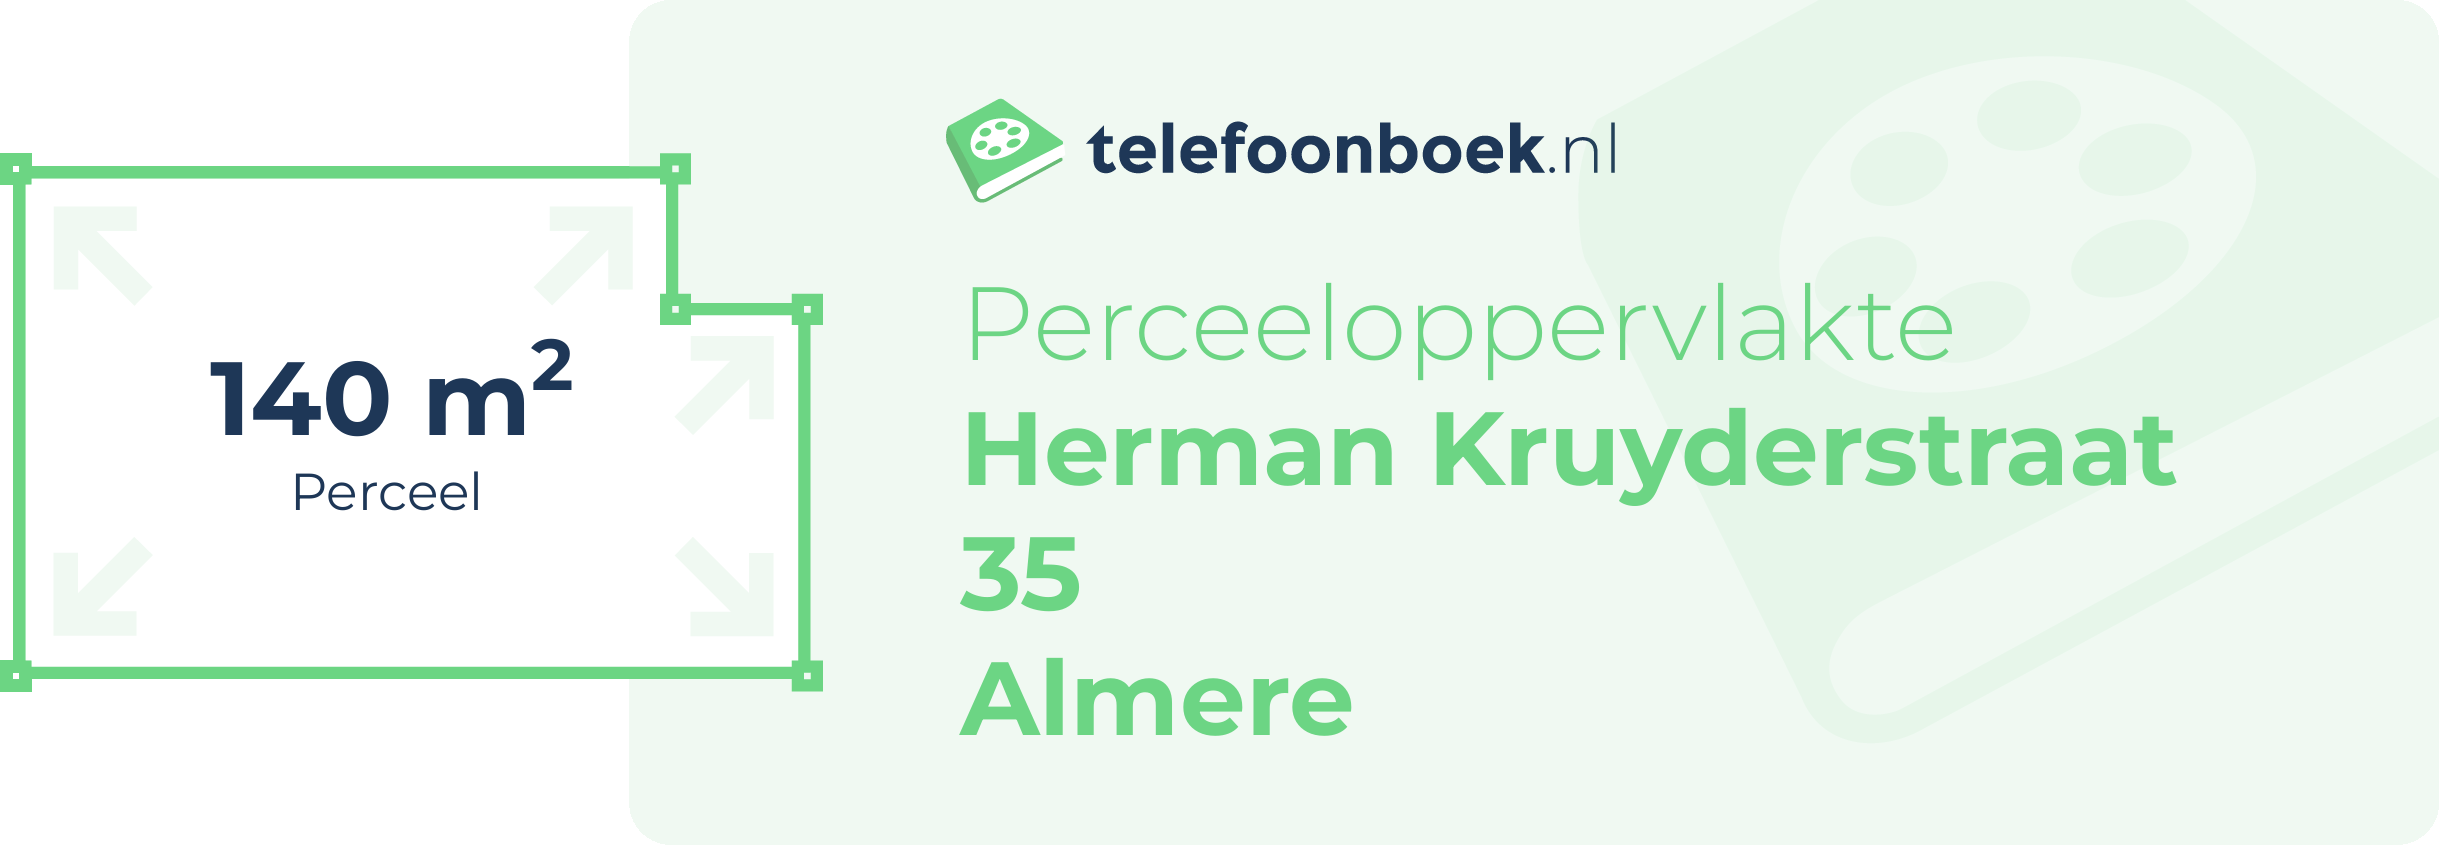 Perceeloppervlakte Herman Kruyderstraat 35 Almere